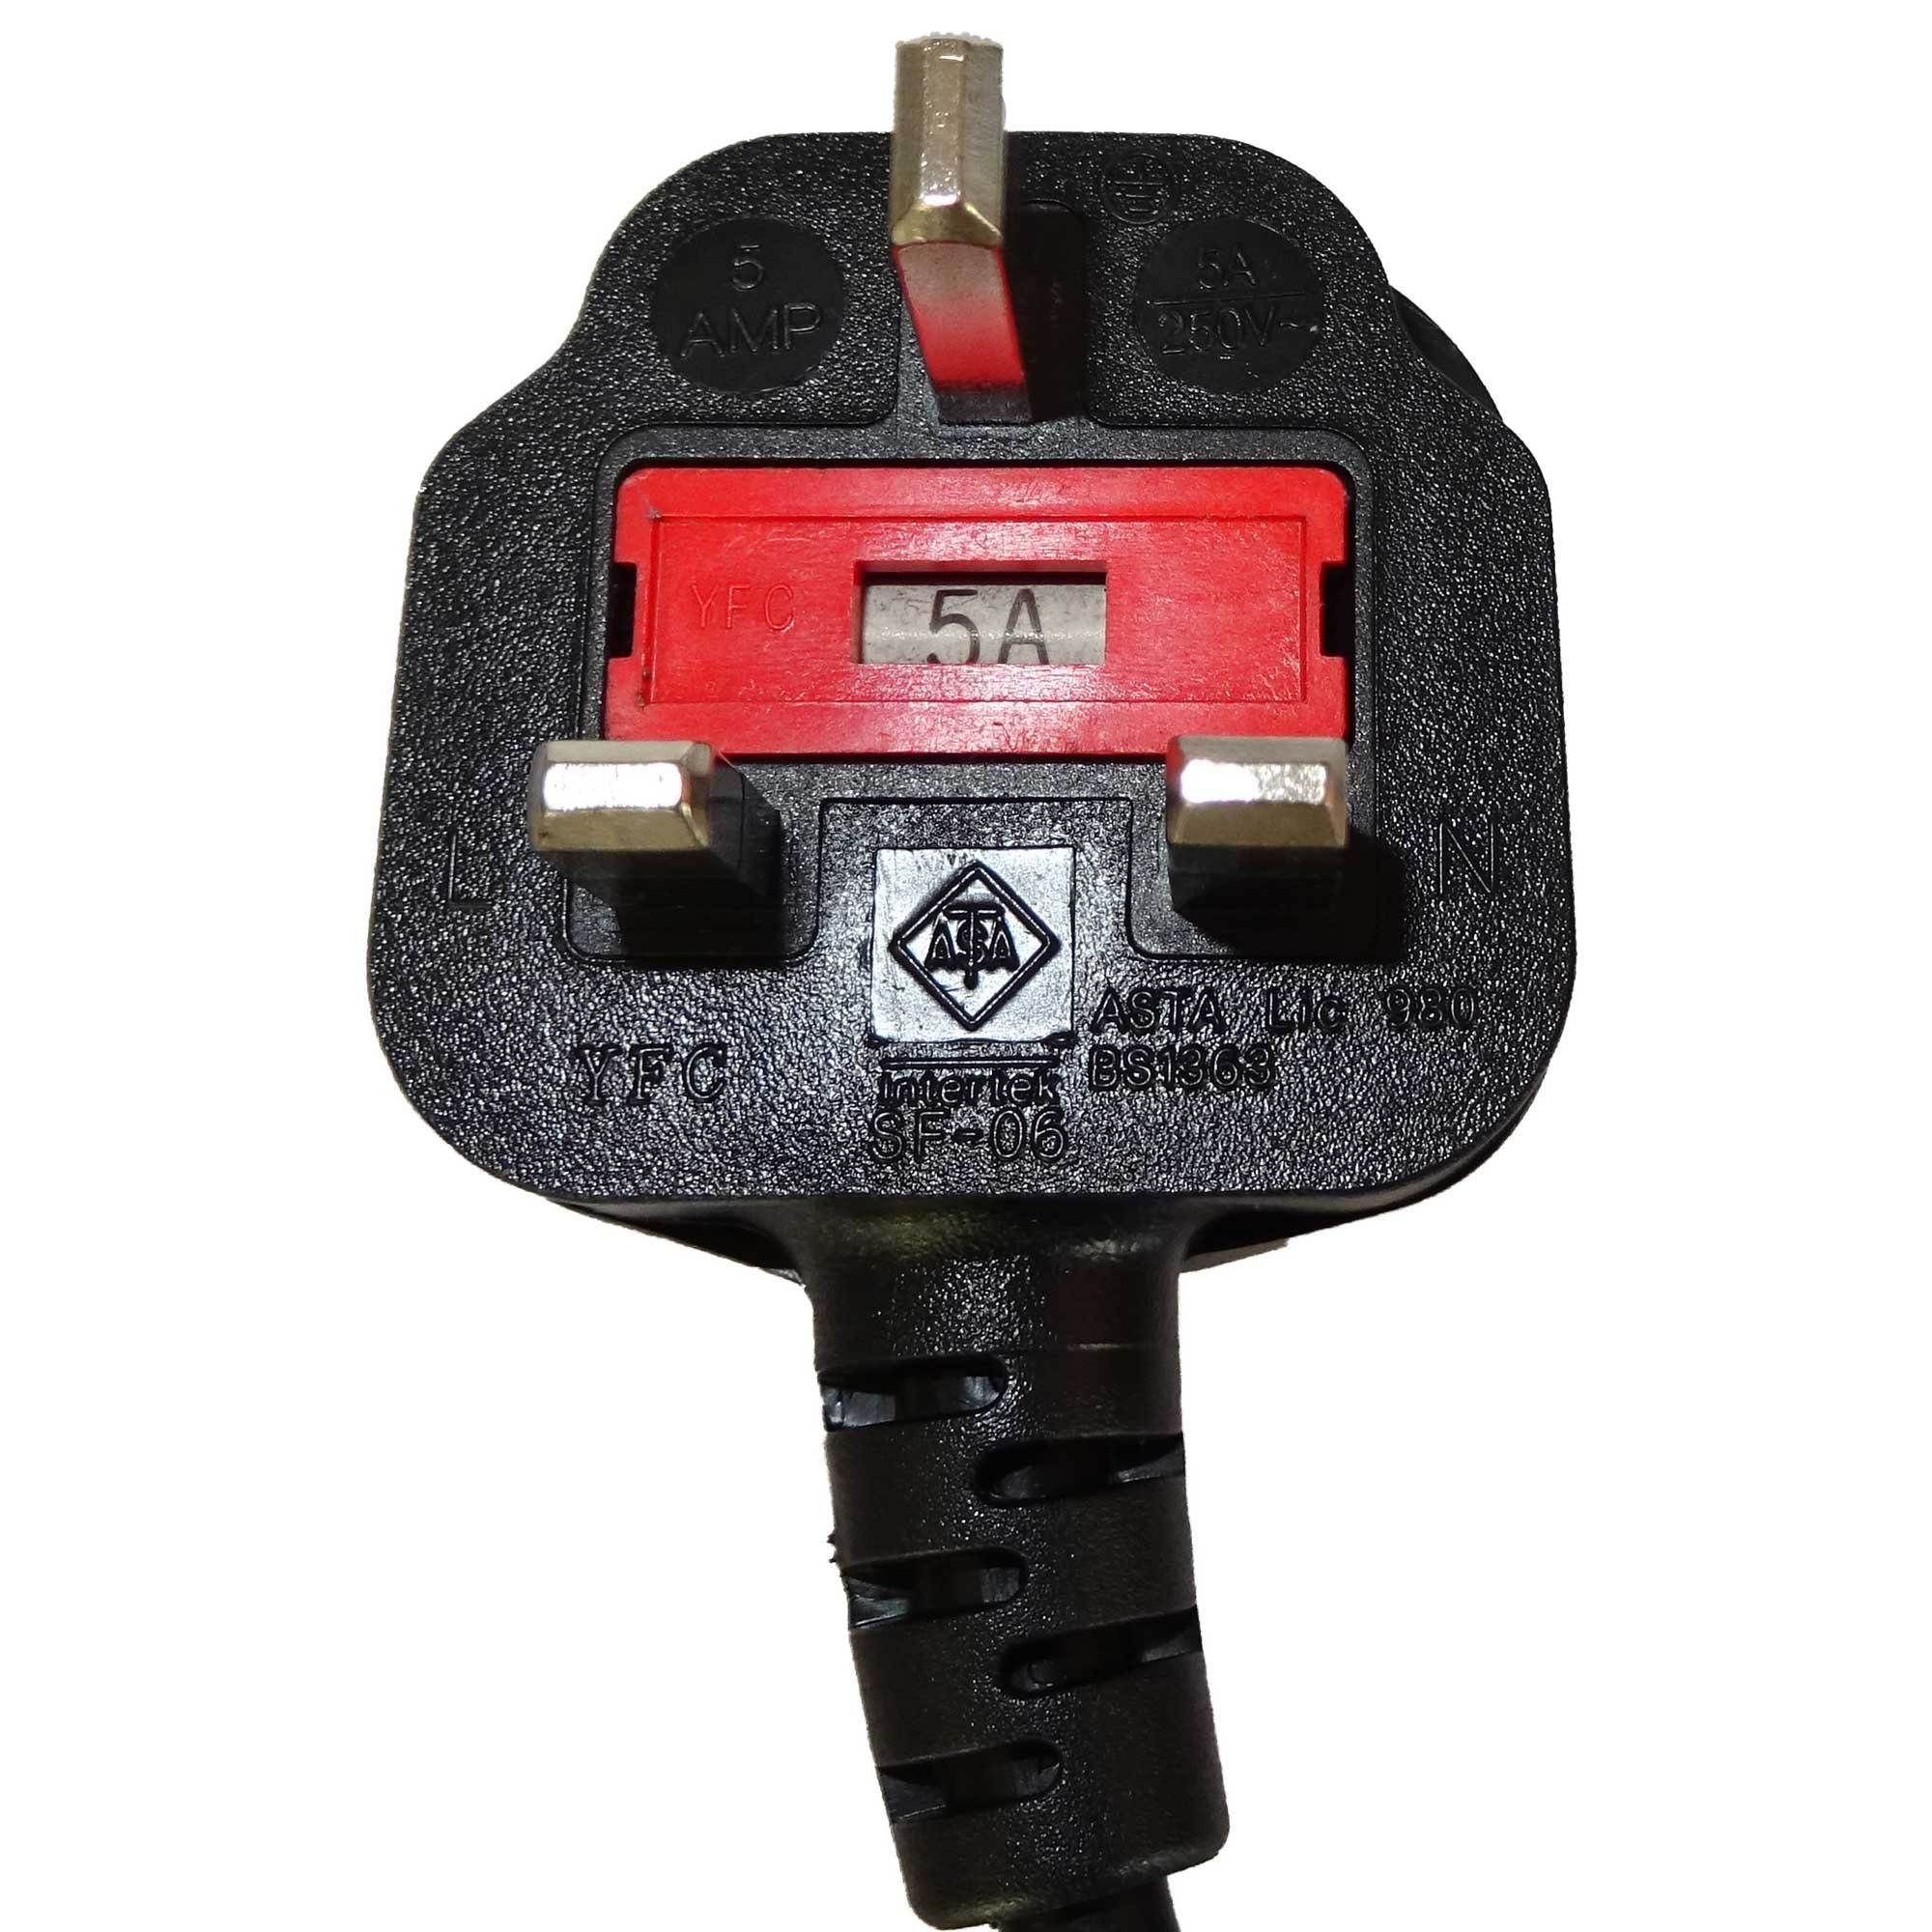 shortix Strom-Adapterkabel Typ J-Buchse (Schweiz) auf Kaltgerätest. 30cm.  Strom-Adapterkabel Kaltgerätestecker, Typ C14 zu Typ J schweiz, 30 cm, kurz